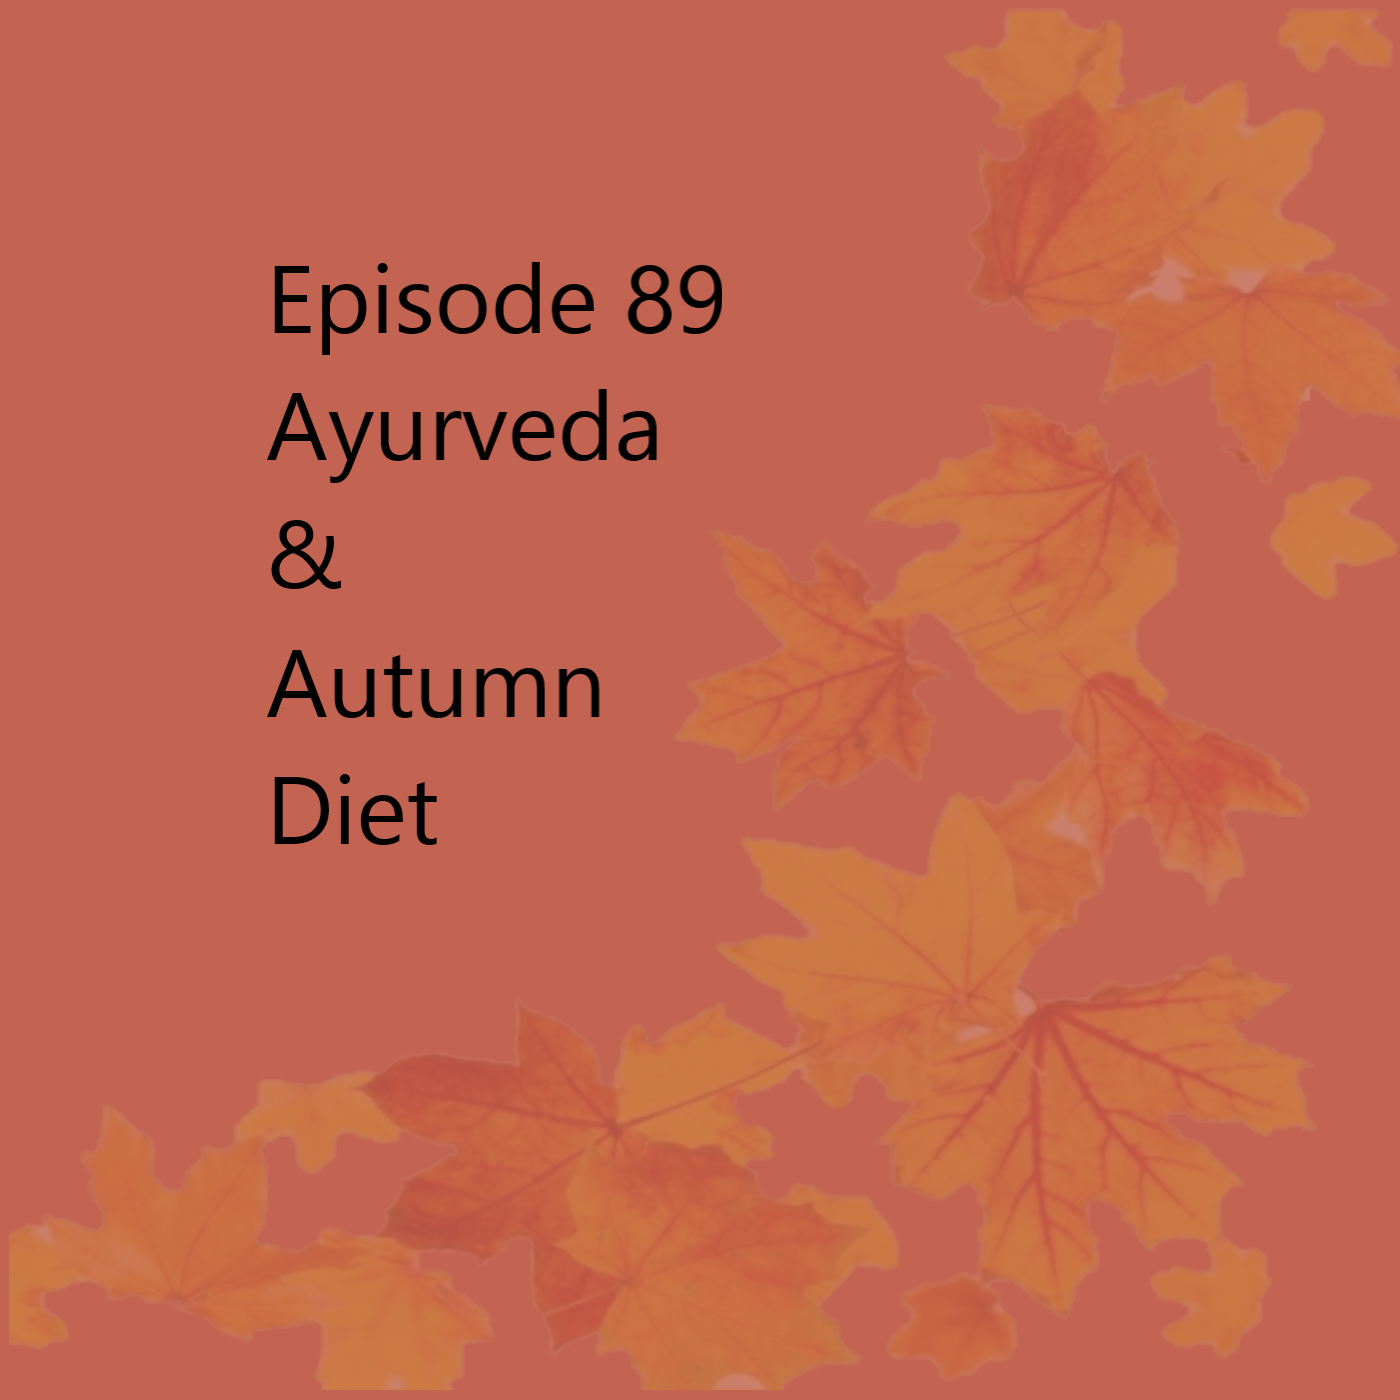 Episode 89 The Autumn Diet